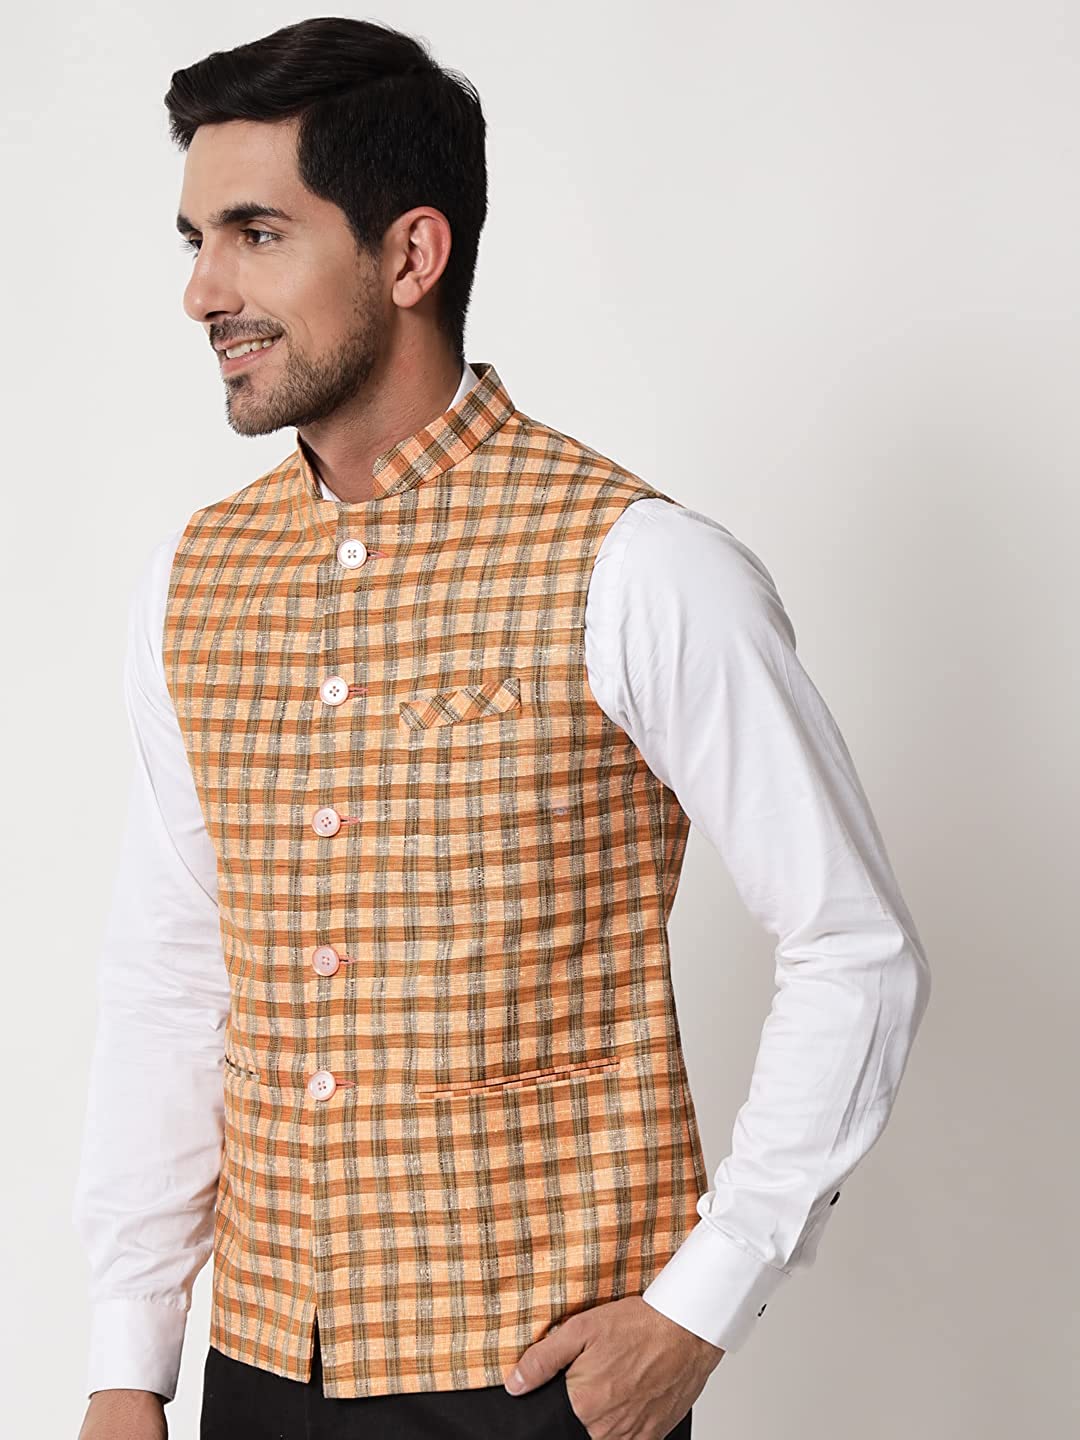 Vastraa Fusion Modi Jacket / Waistcoat - Chabila Block Check Patterns - South Cotton Jacket